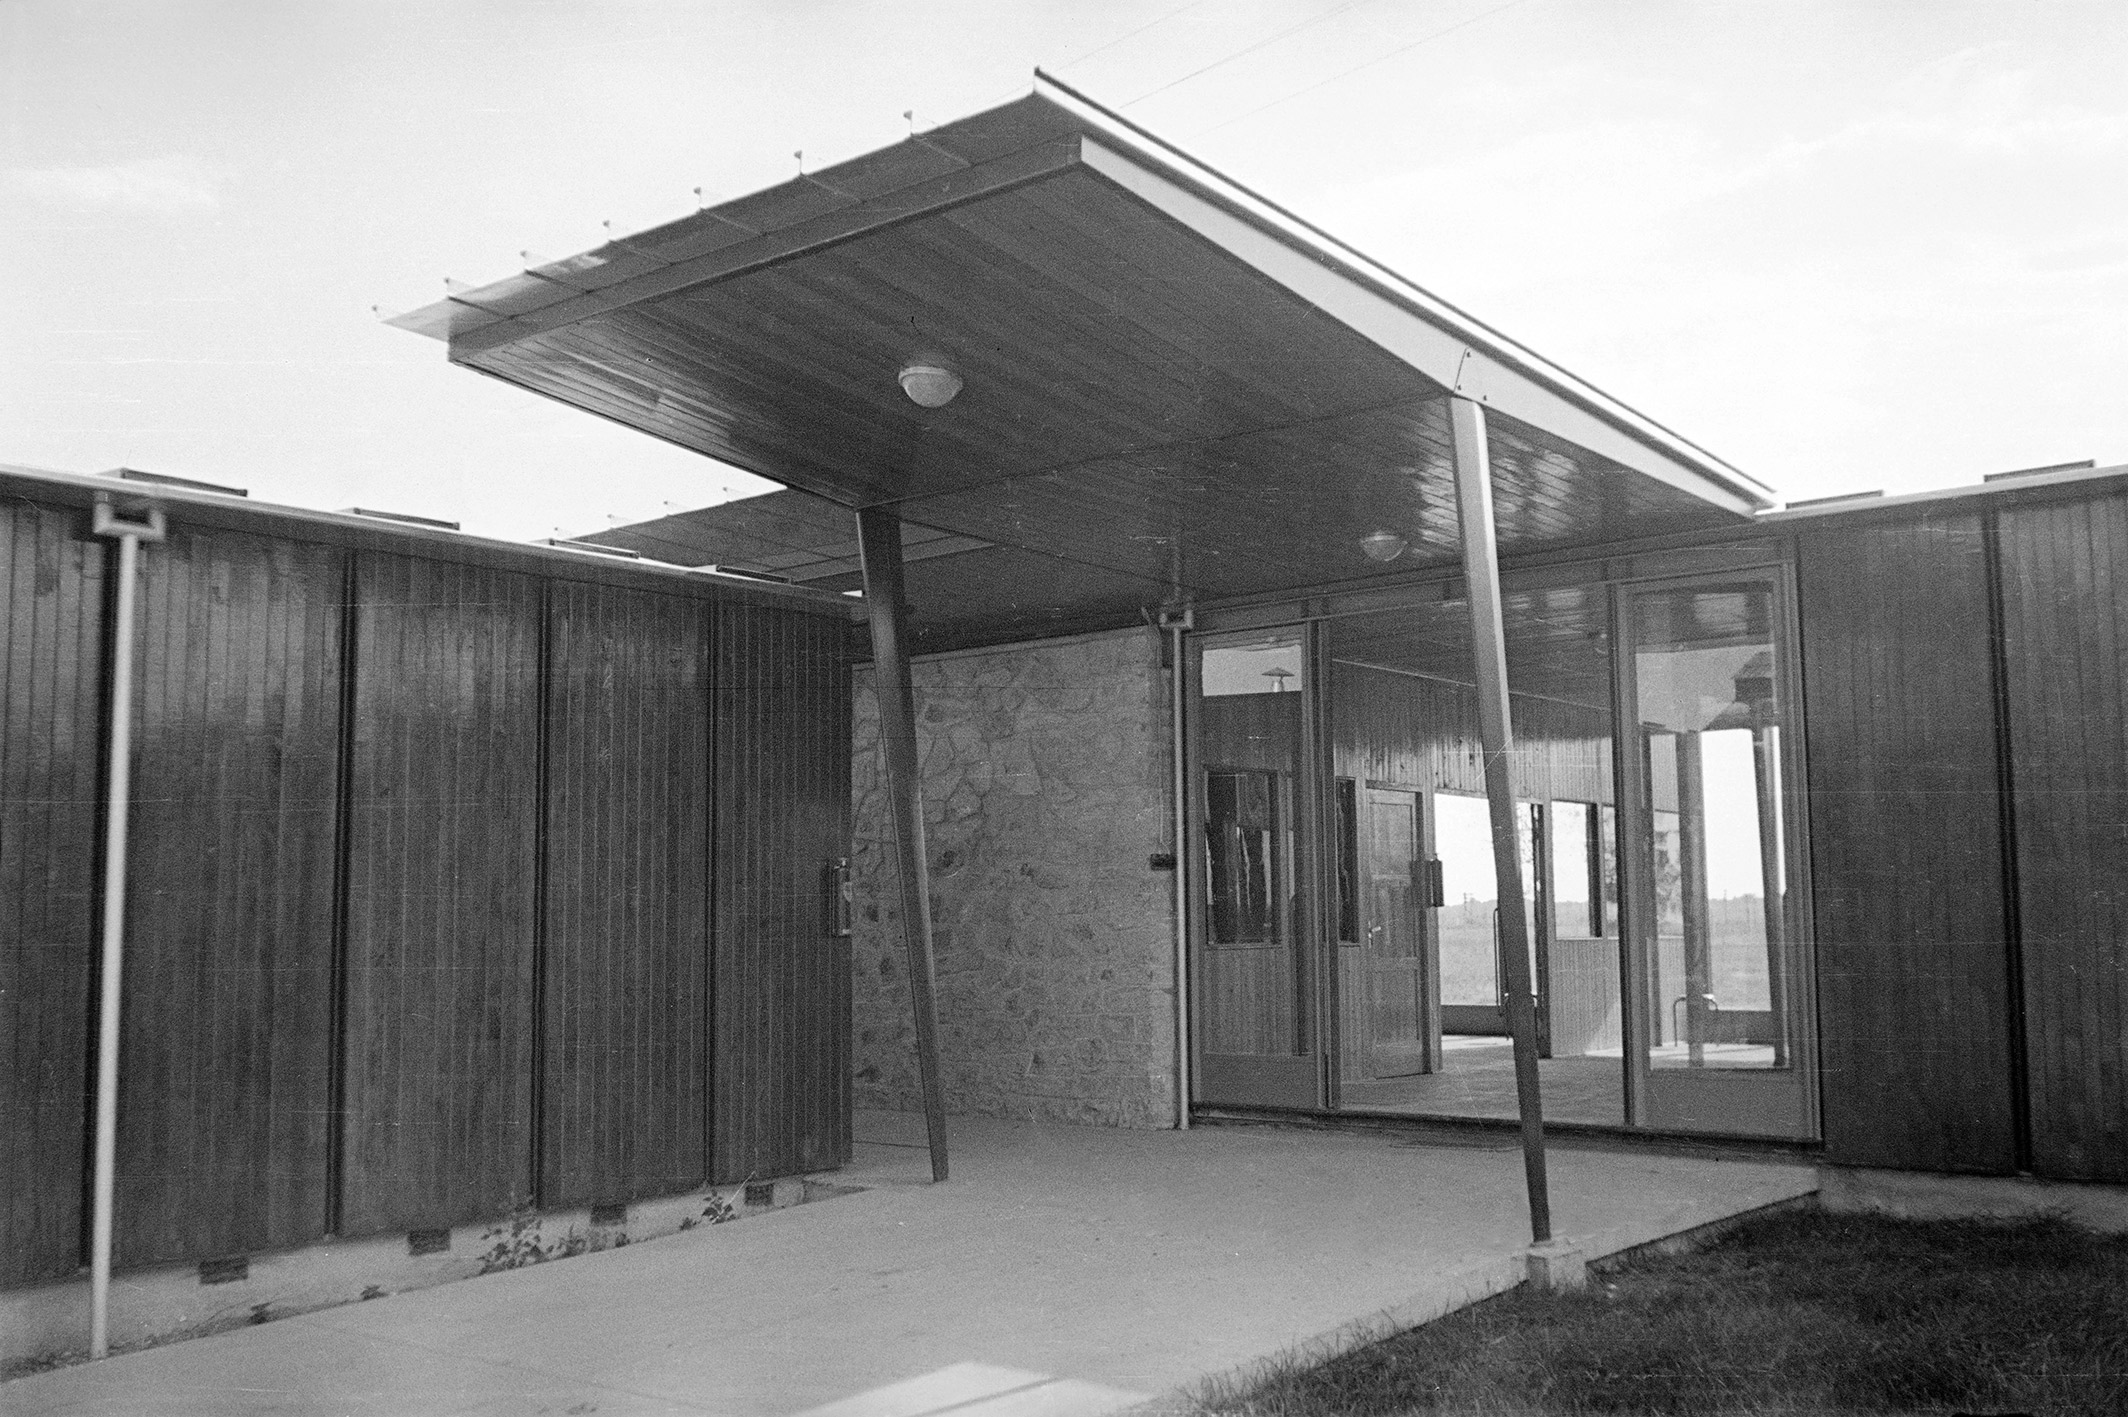 School for glassmaking apprentices, Croismare, 1948 (Jean Prouvé, with architect Henri Prouvé). Entrance canopy.